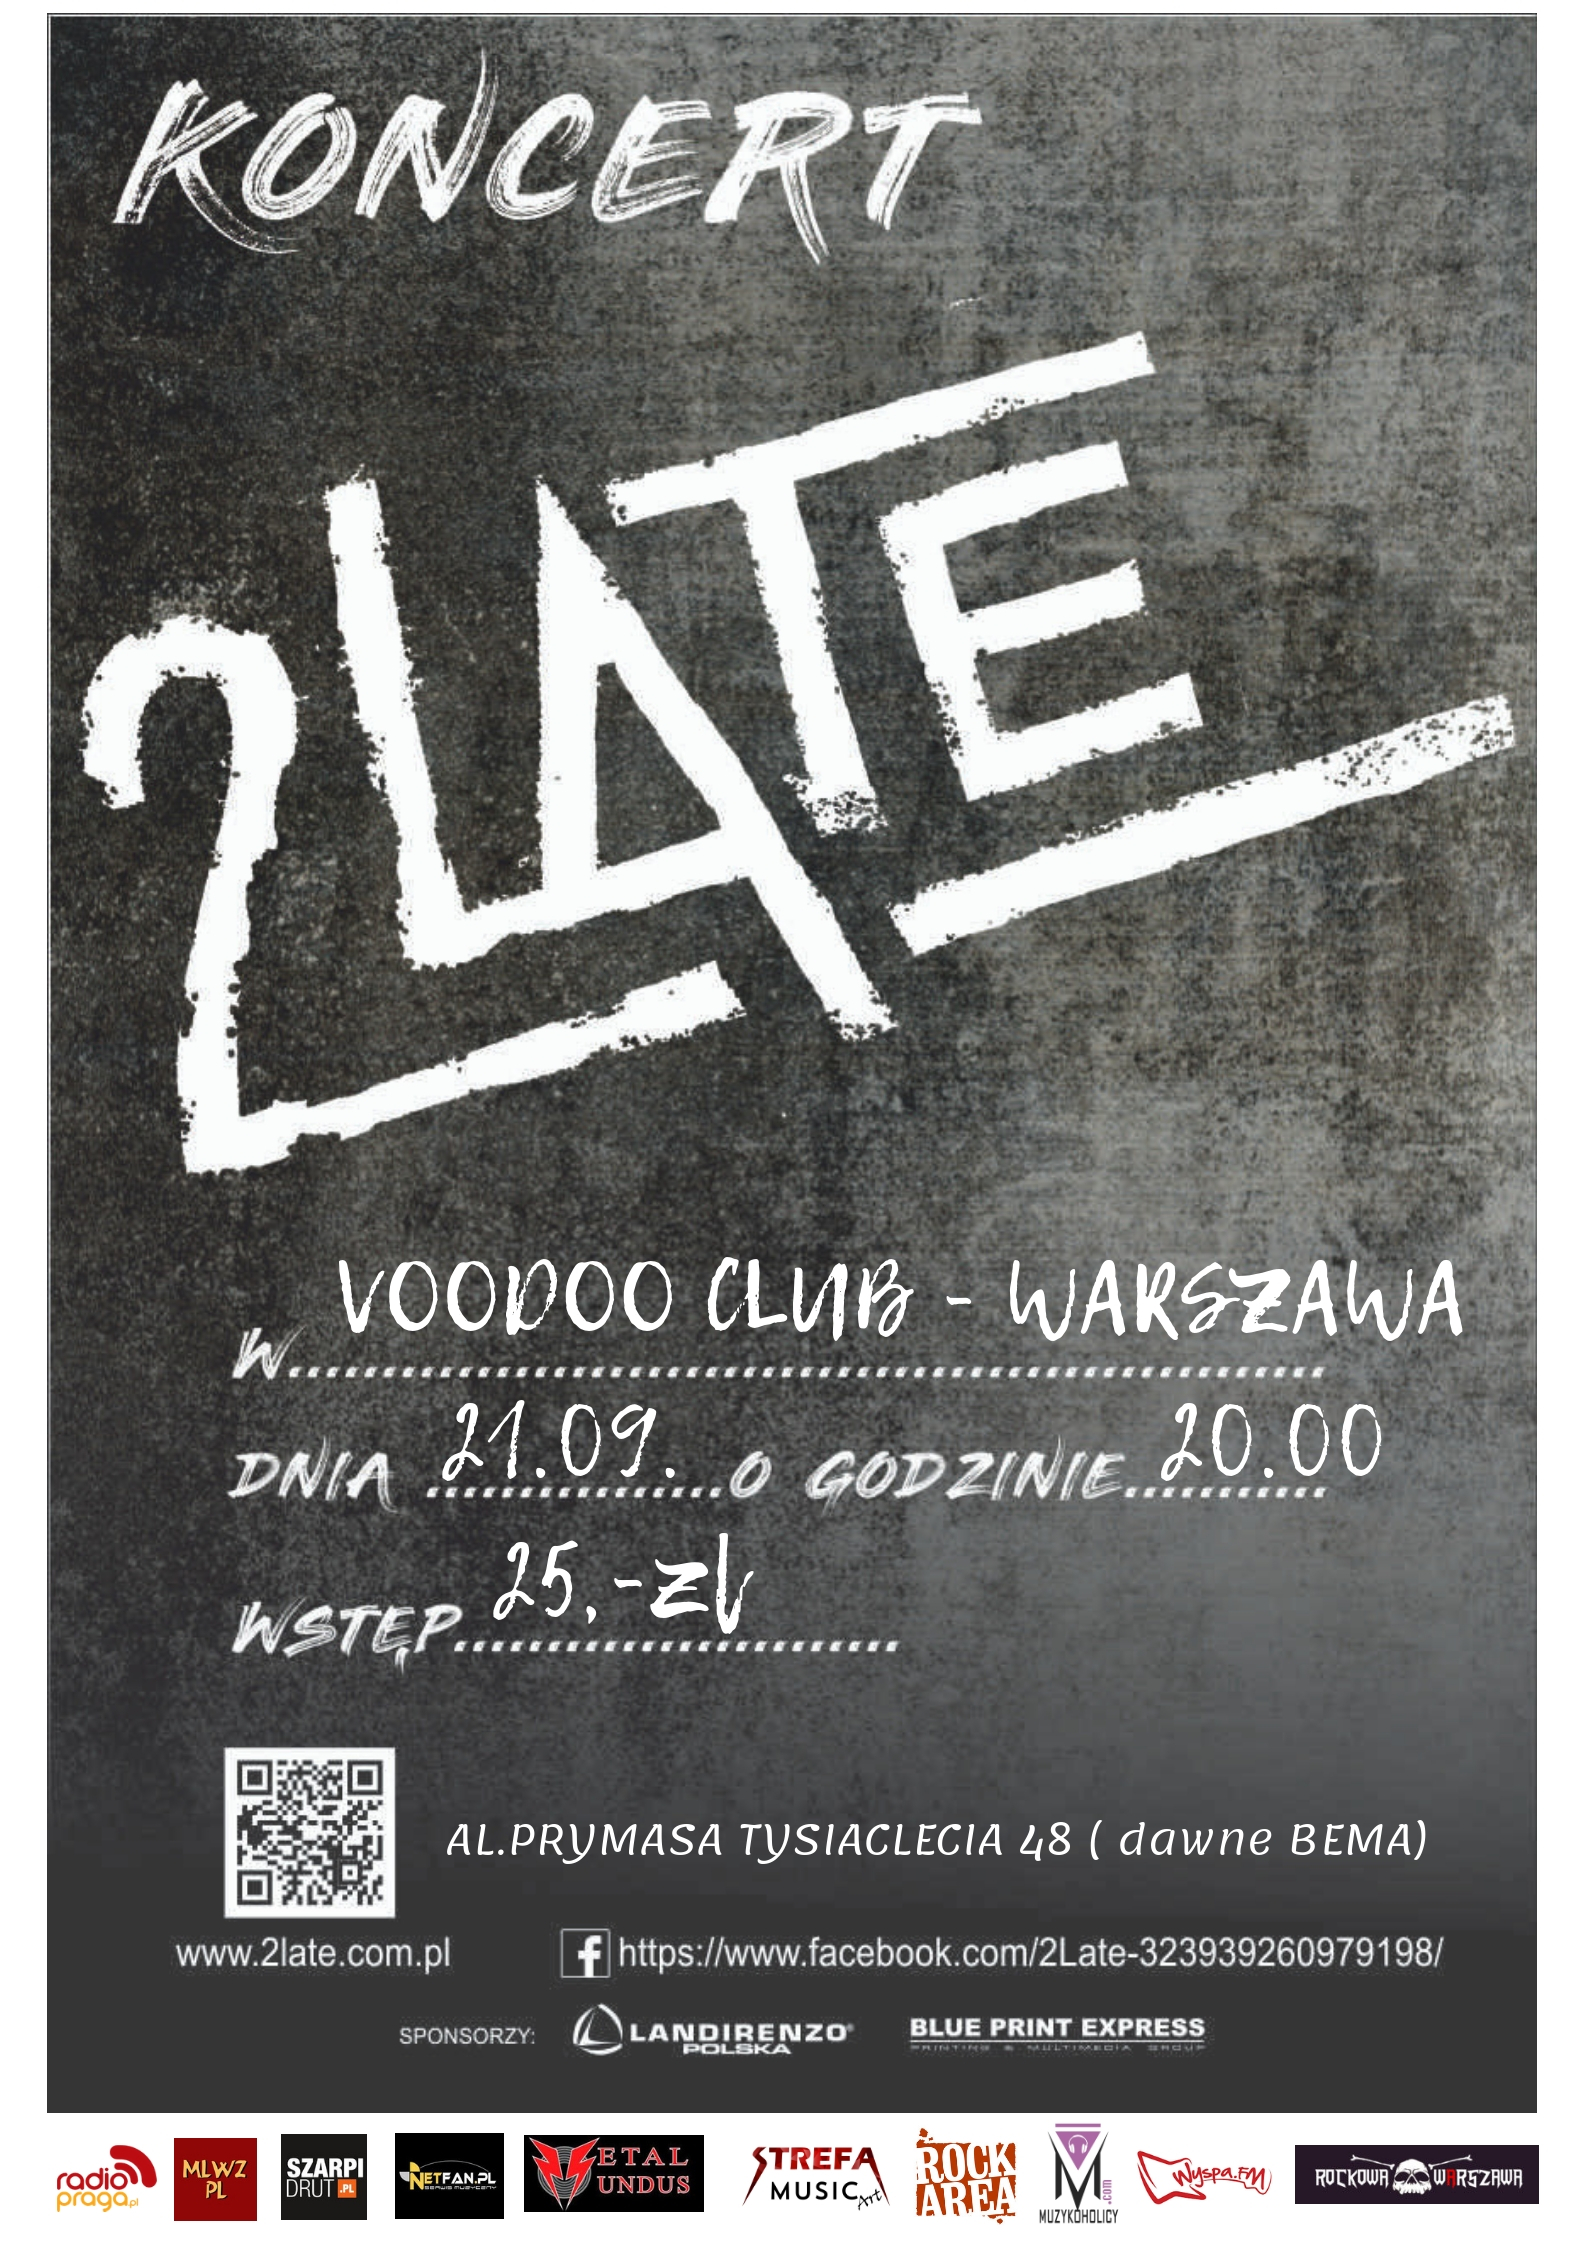 2LATE - koncert 21.09 w Warszawie - promocja Epki EASY